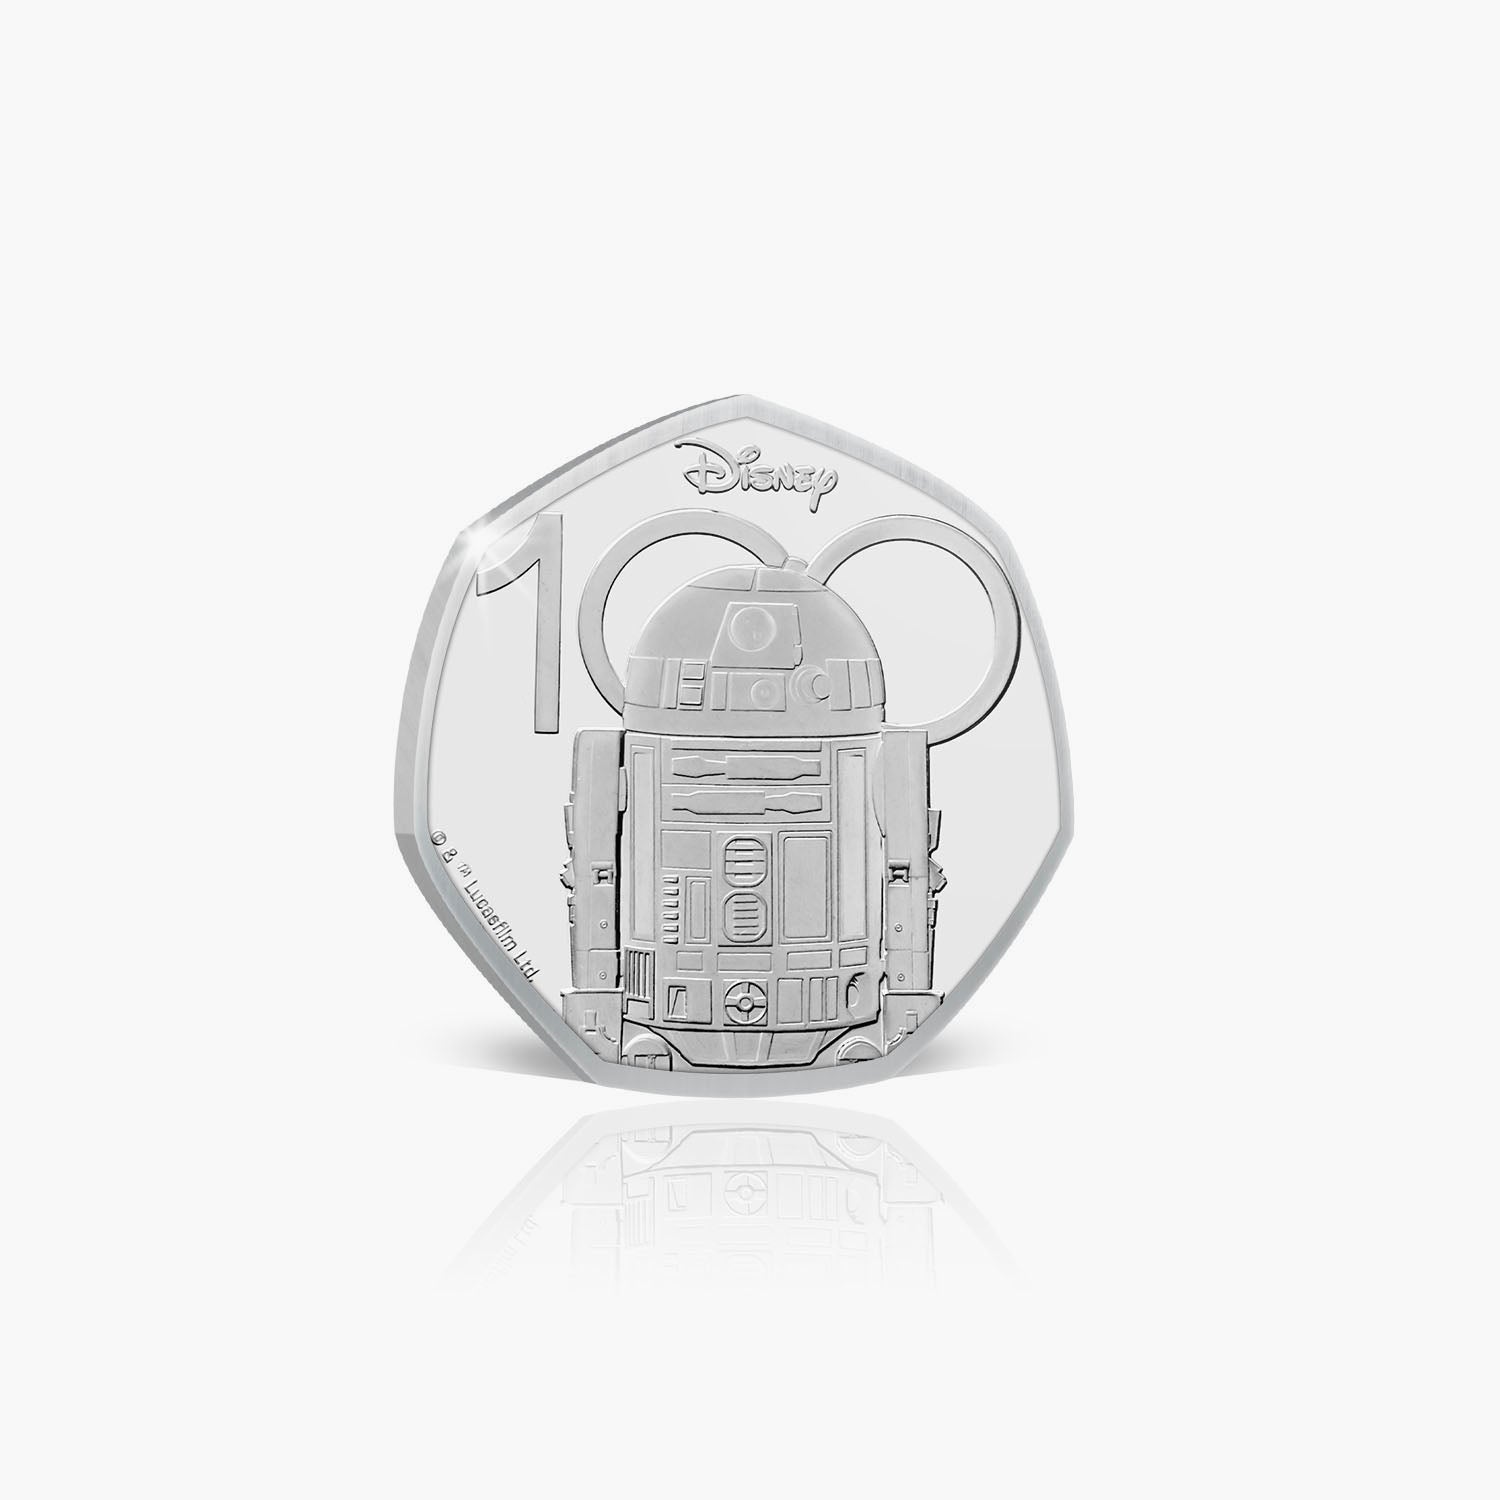 Star Wars R2-D2 2023 50p BU Coin